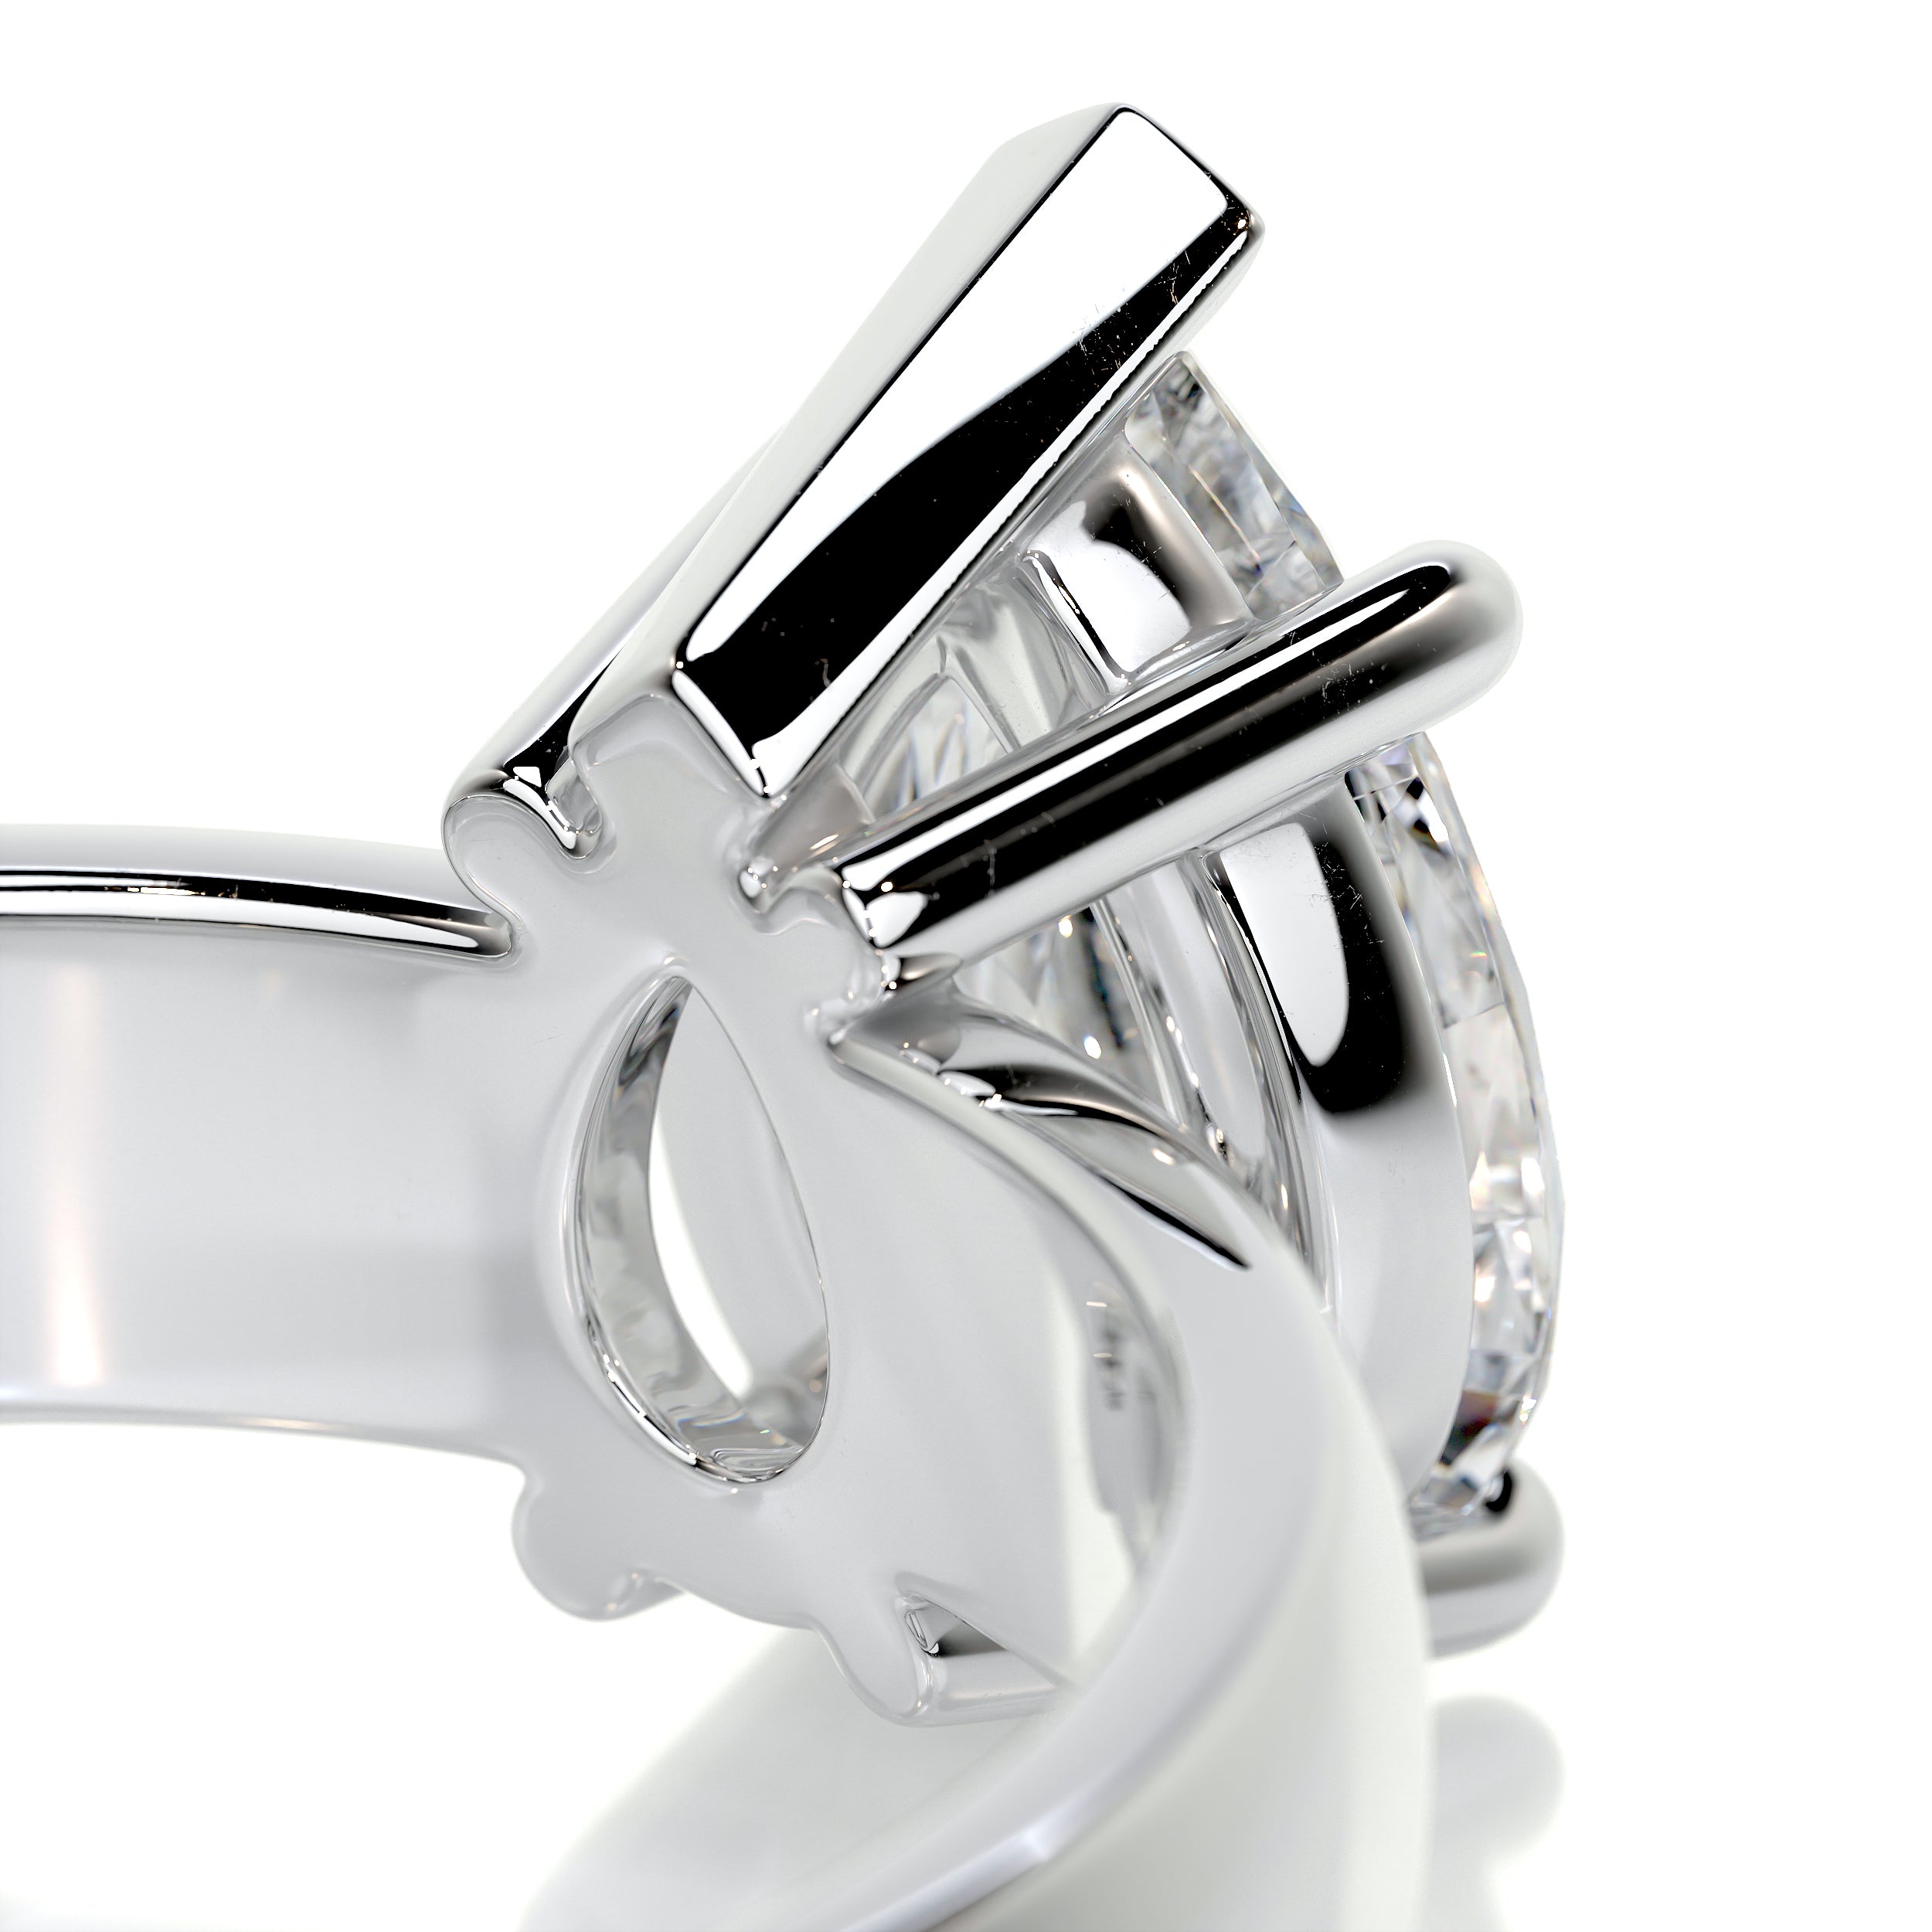 Hannah Diamond Engagement Ring -18K White Gold